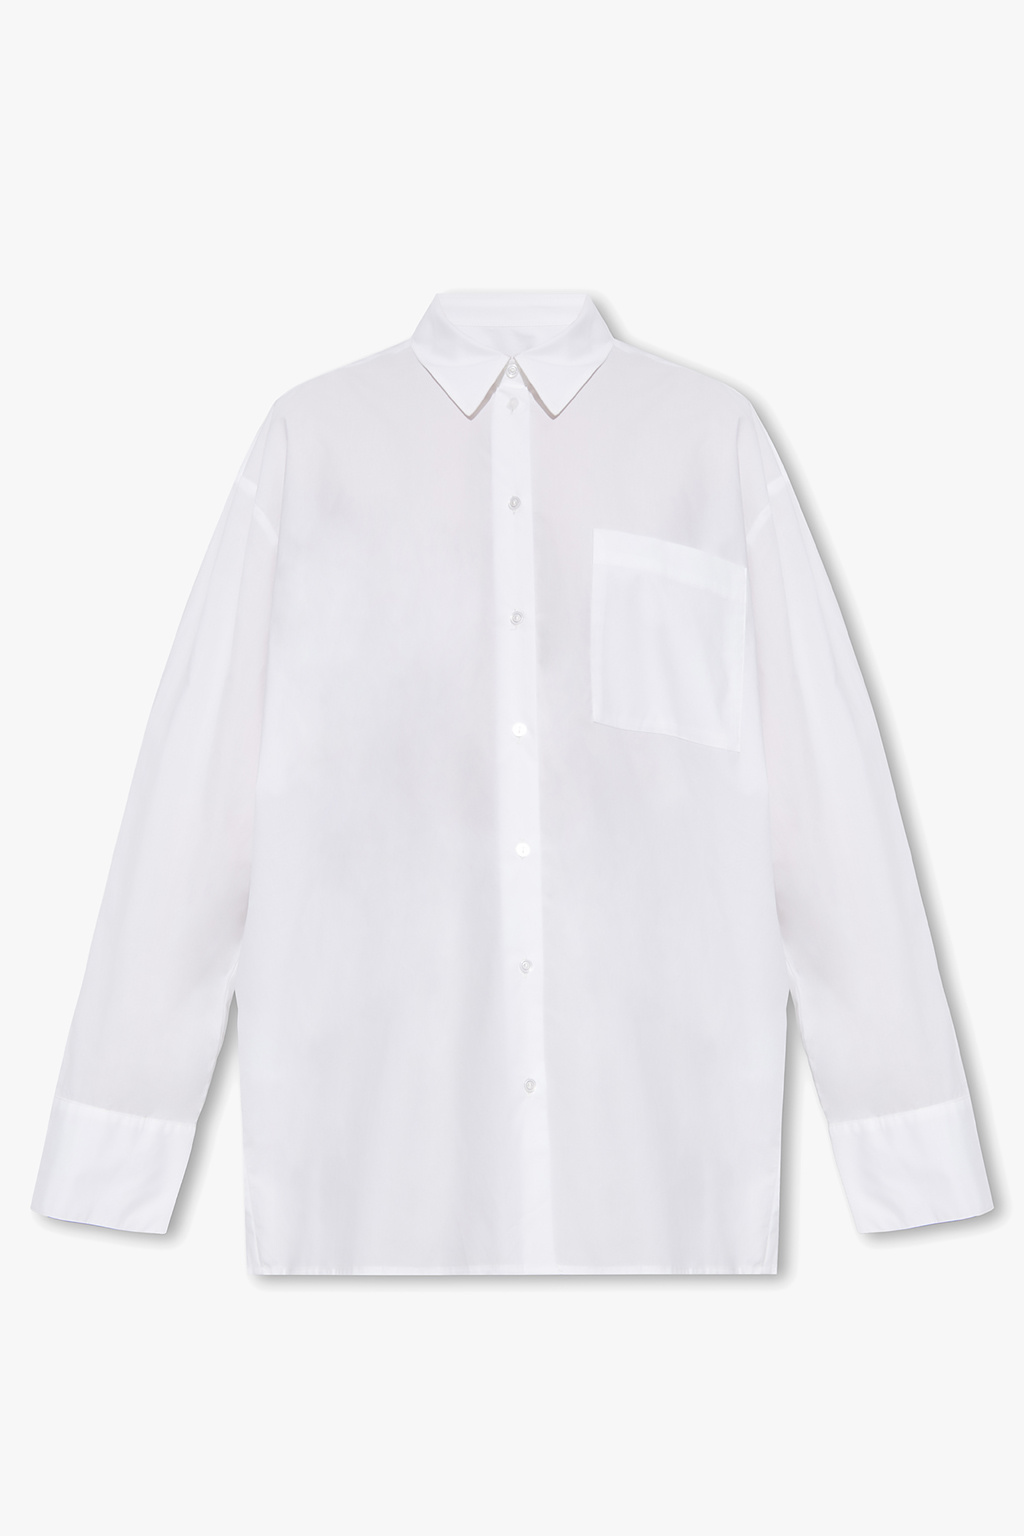 HERSKIND ‘Henriette’ cotton shirt